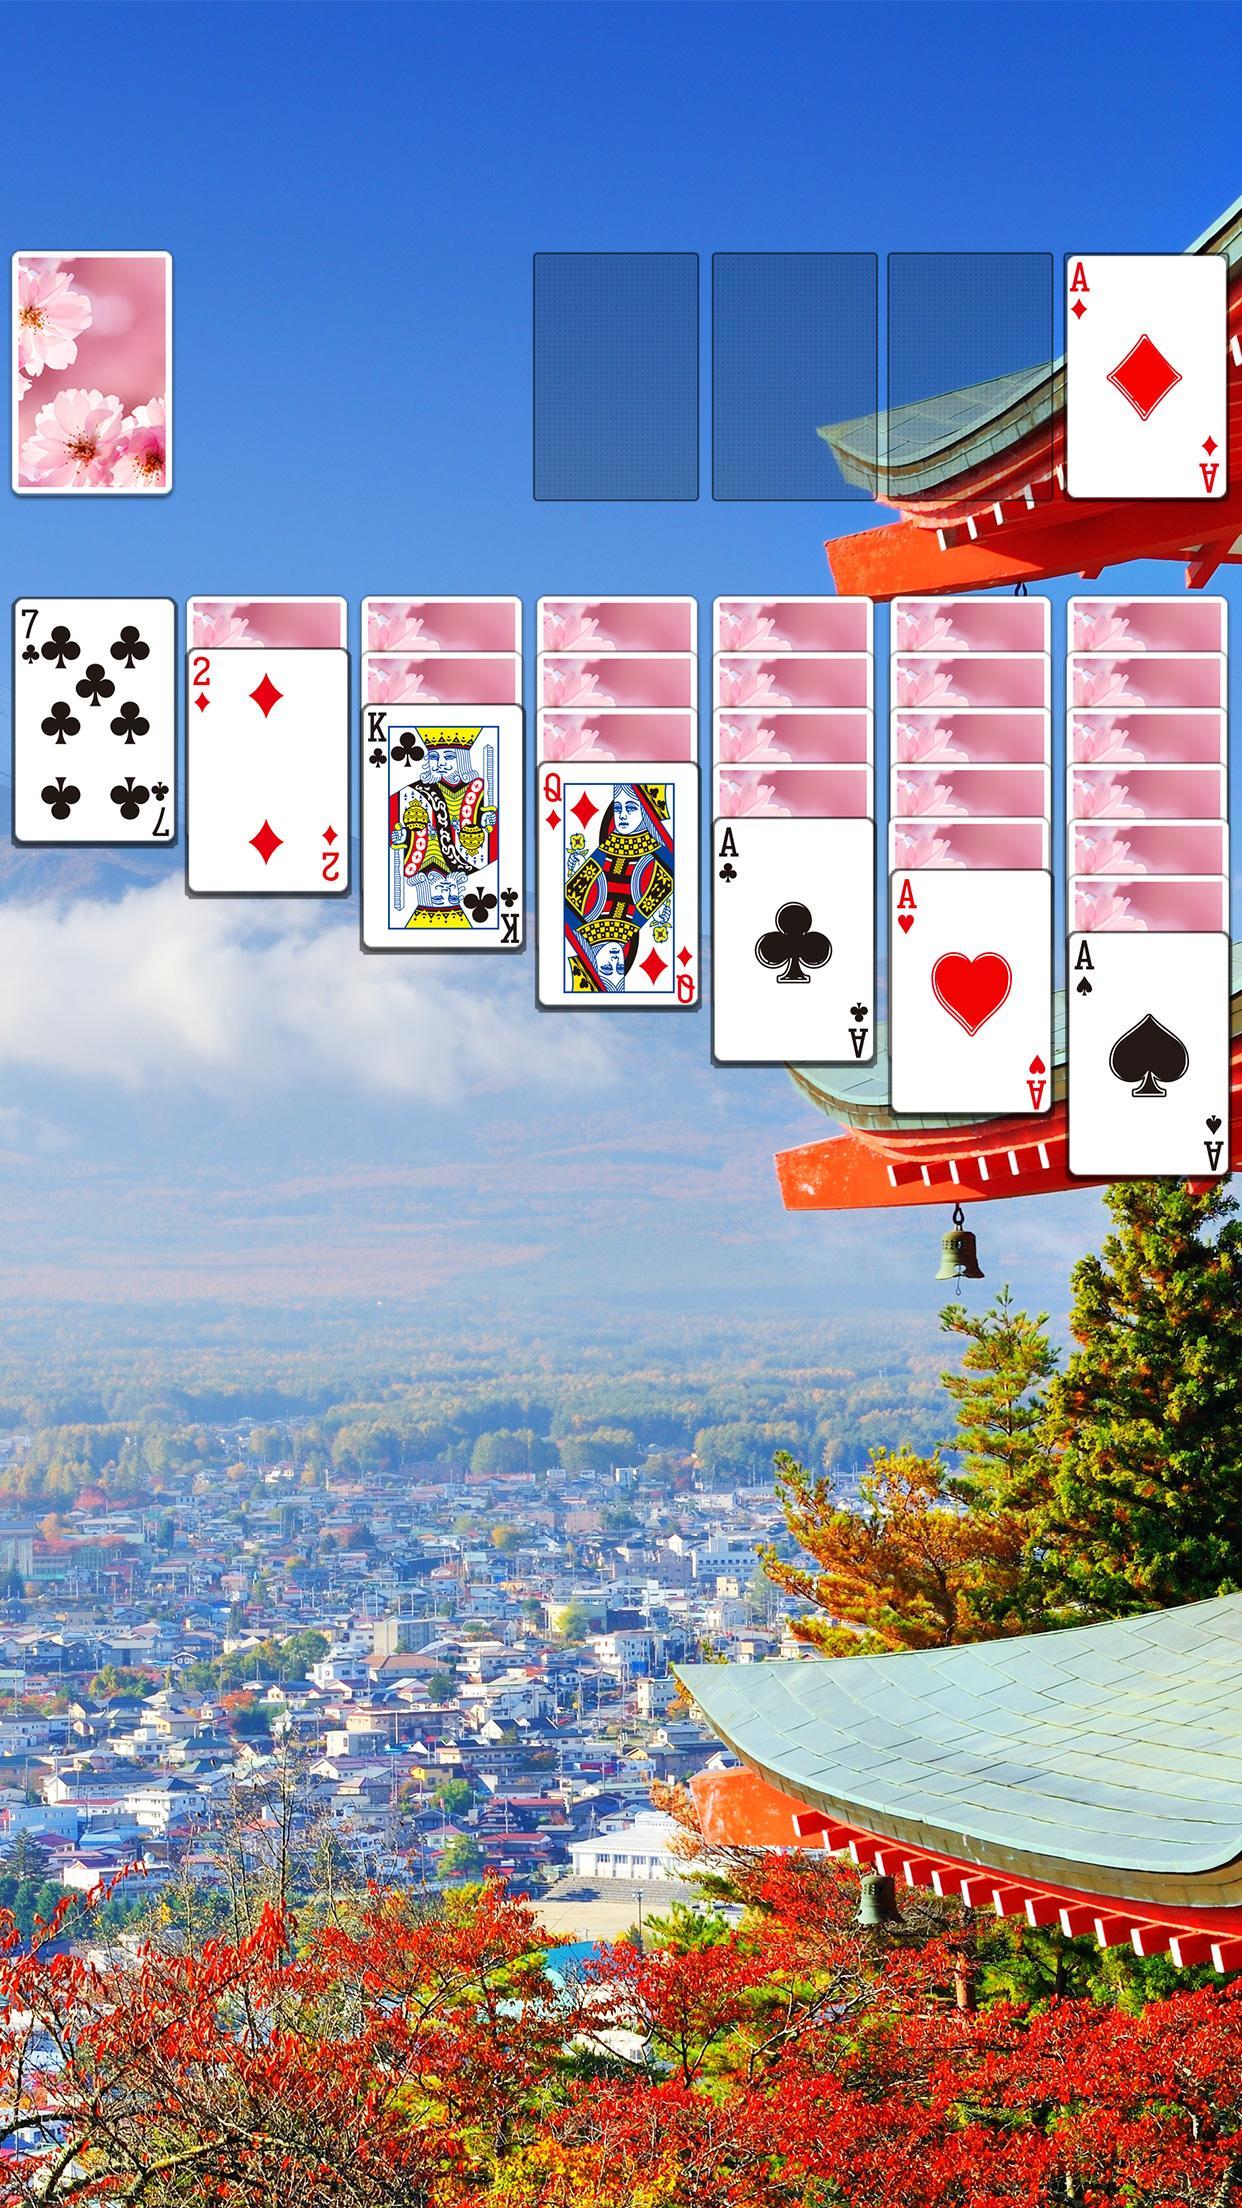 Screenshot 1 of chơi bài 2.219.0